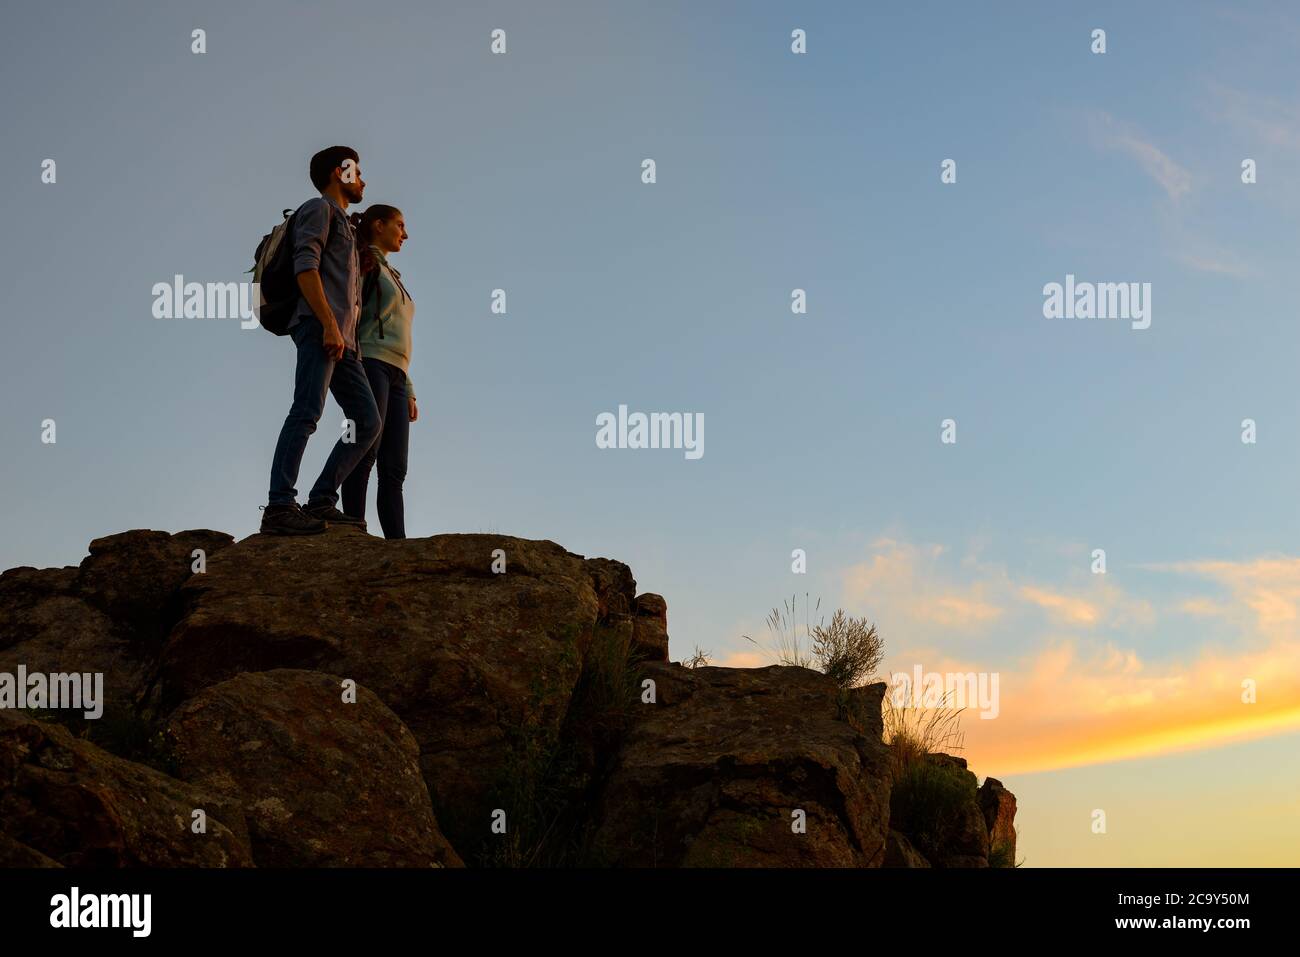 Ein paar junge Reisende, die bei Sonnenuntergang auf der Spitze des Felsens stehen. Familienreisen und Abenteuer Konzept Stockfoto